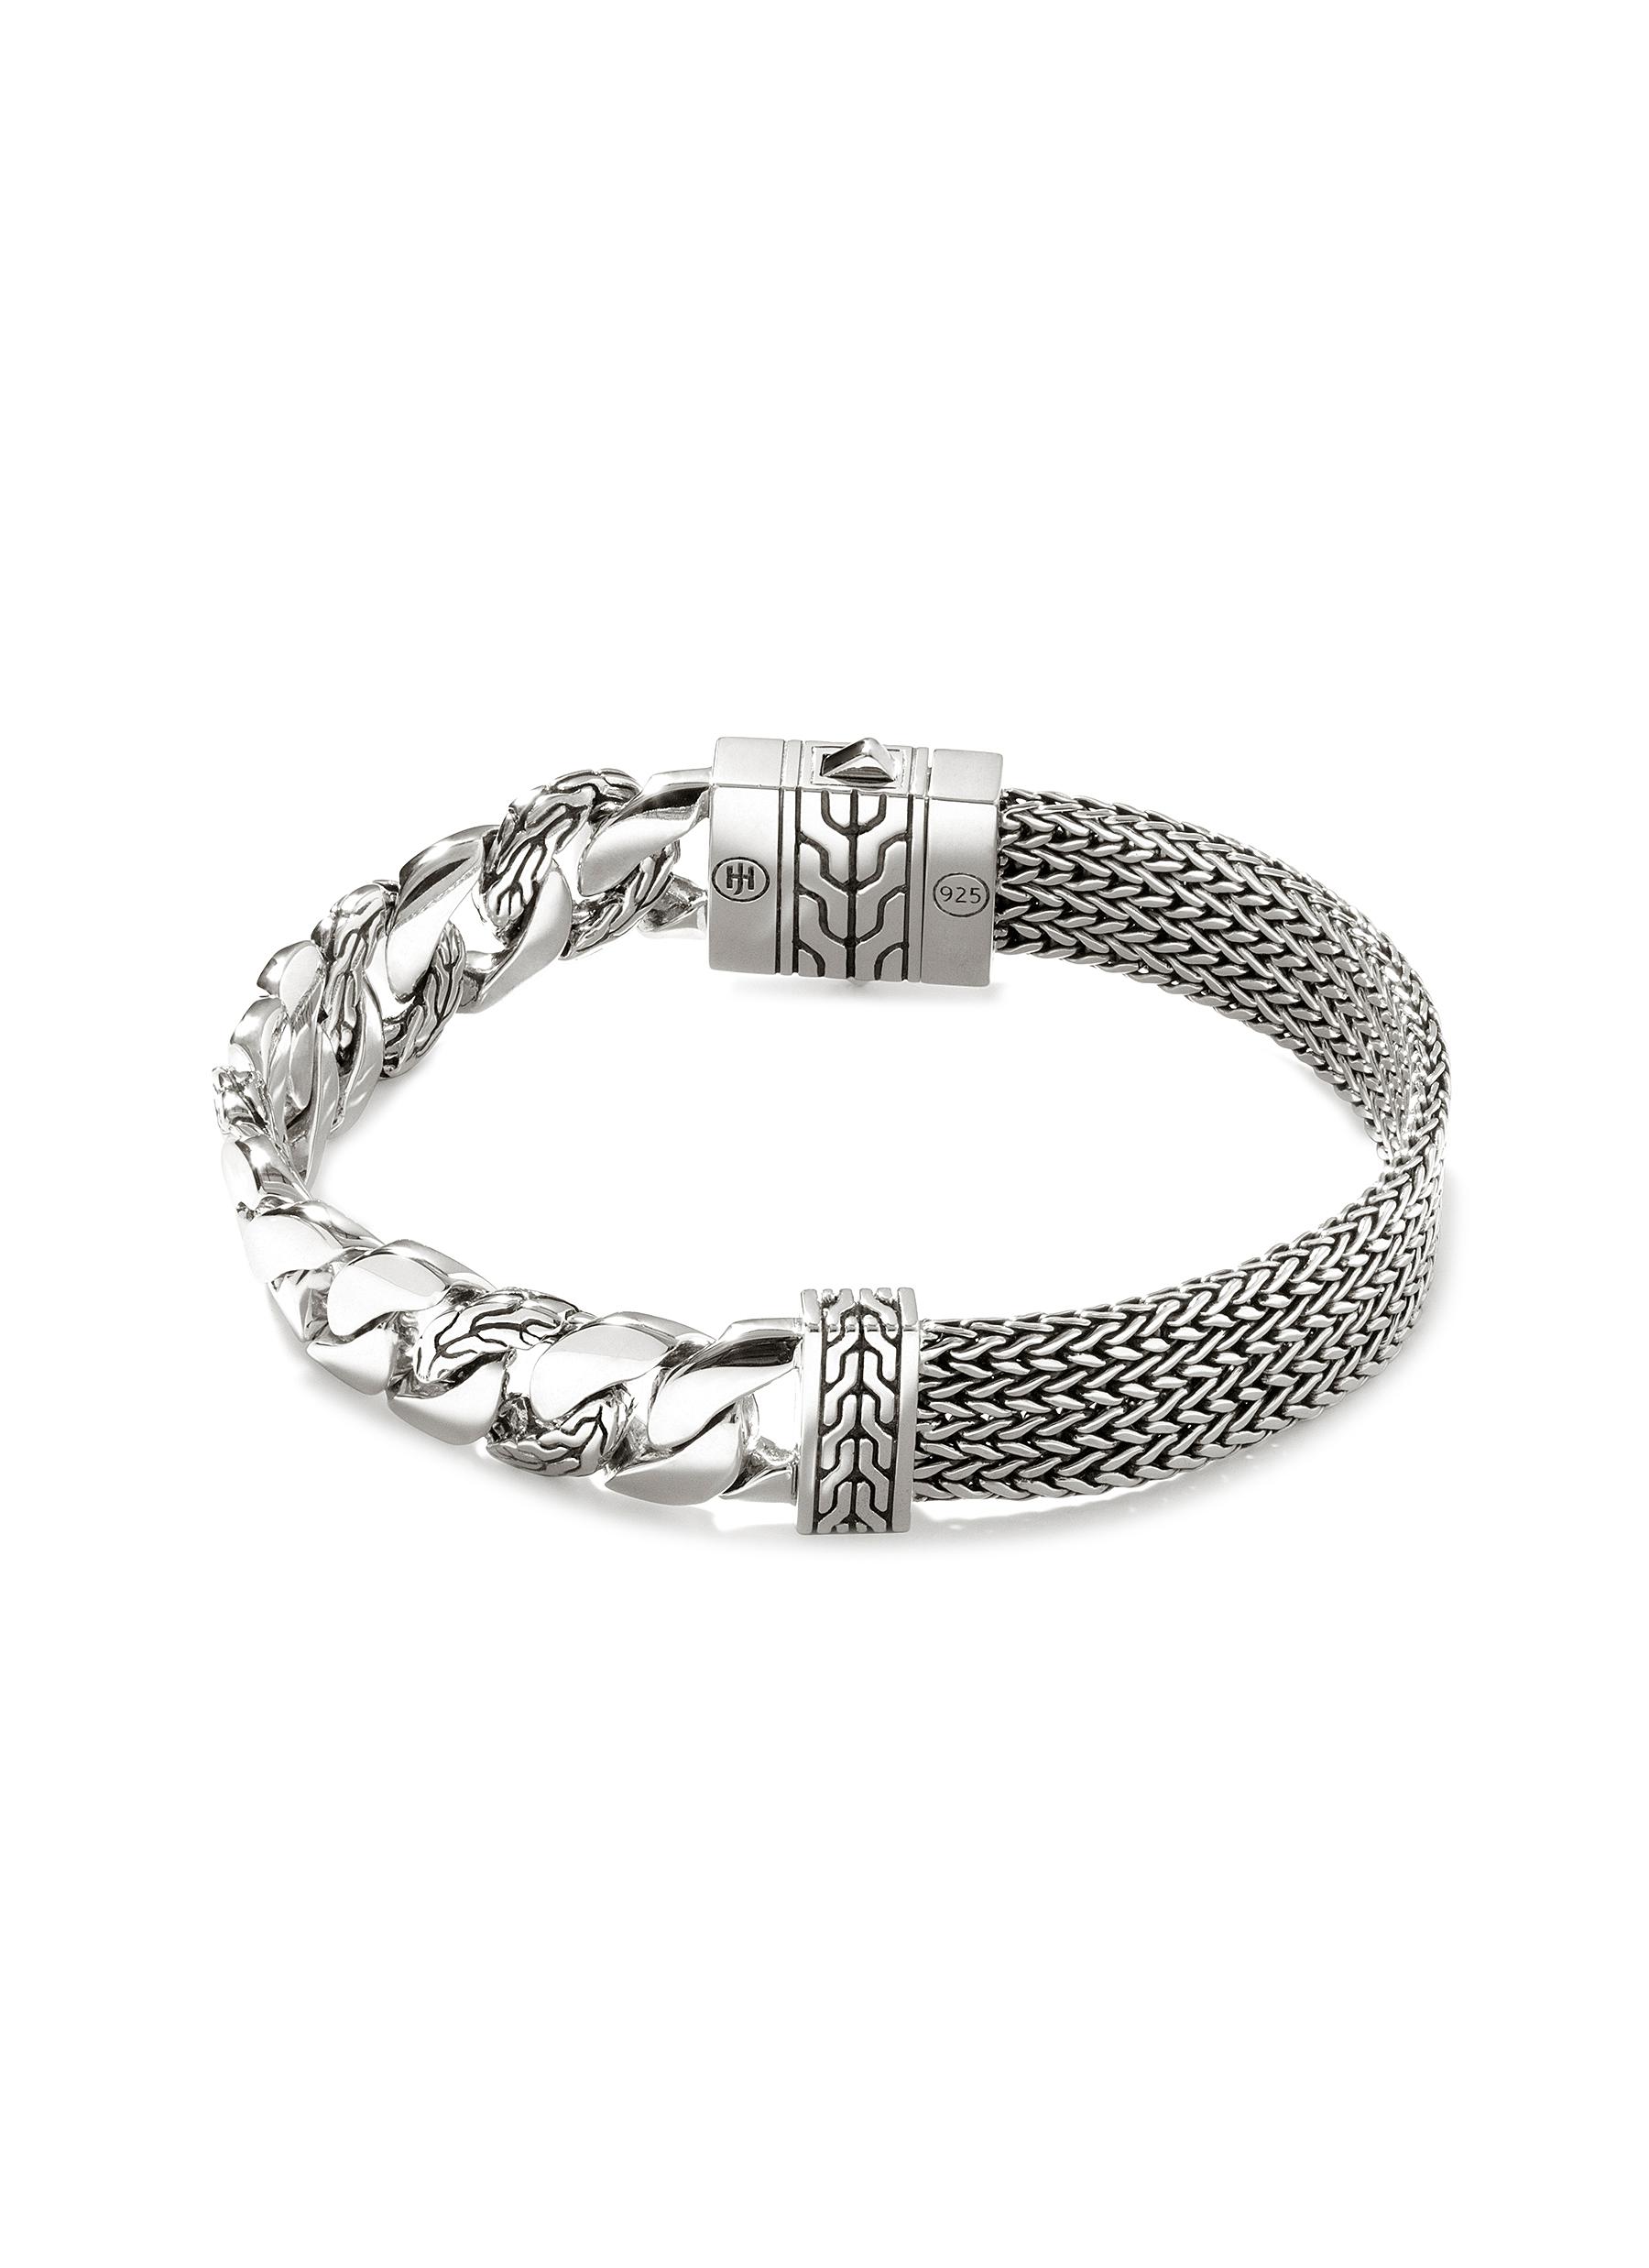 Bracelets| FANCI ME Jewelry Online Boutique – FANCI.ME